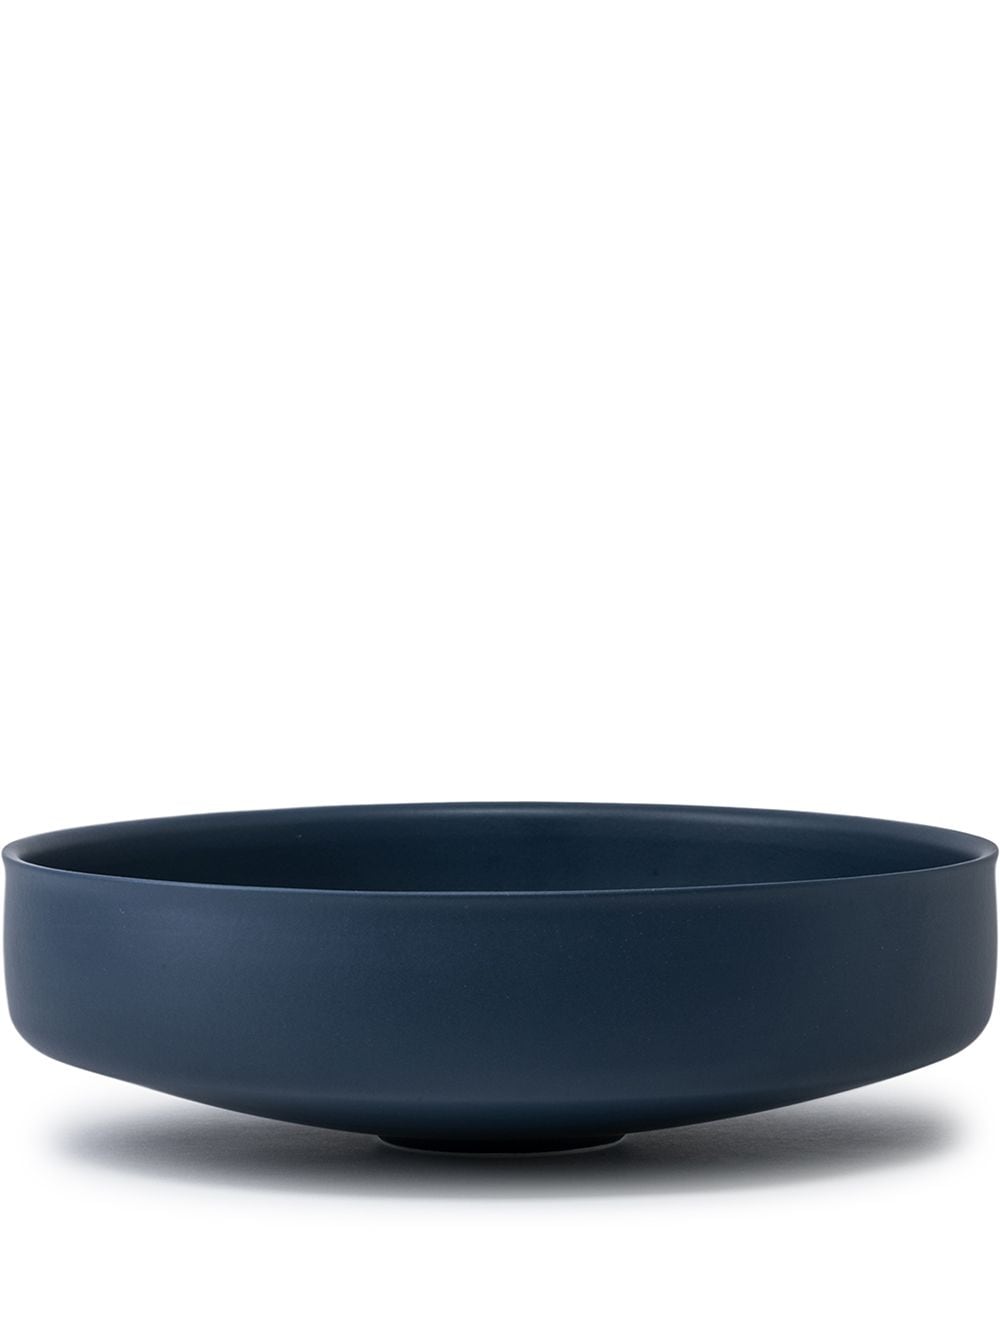 raawii Bowl 01 serving bowl (30cm) - Blue von raawii